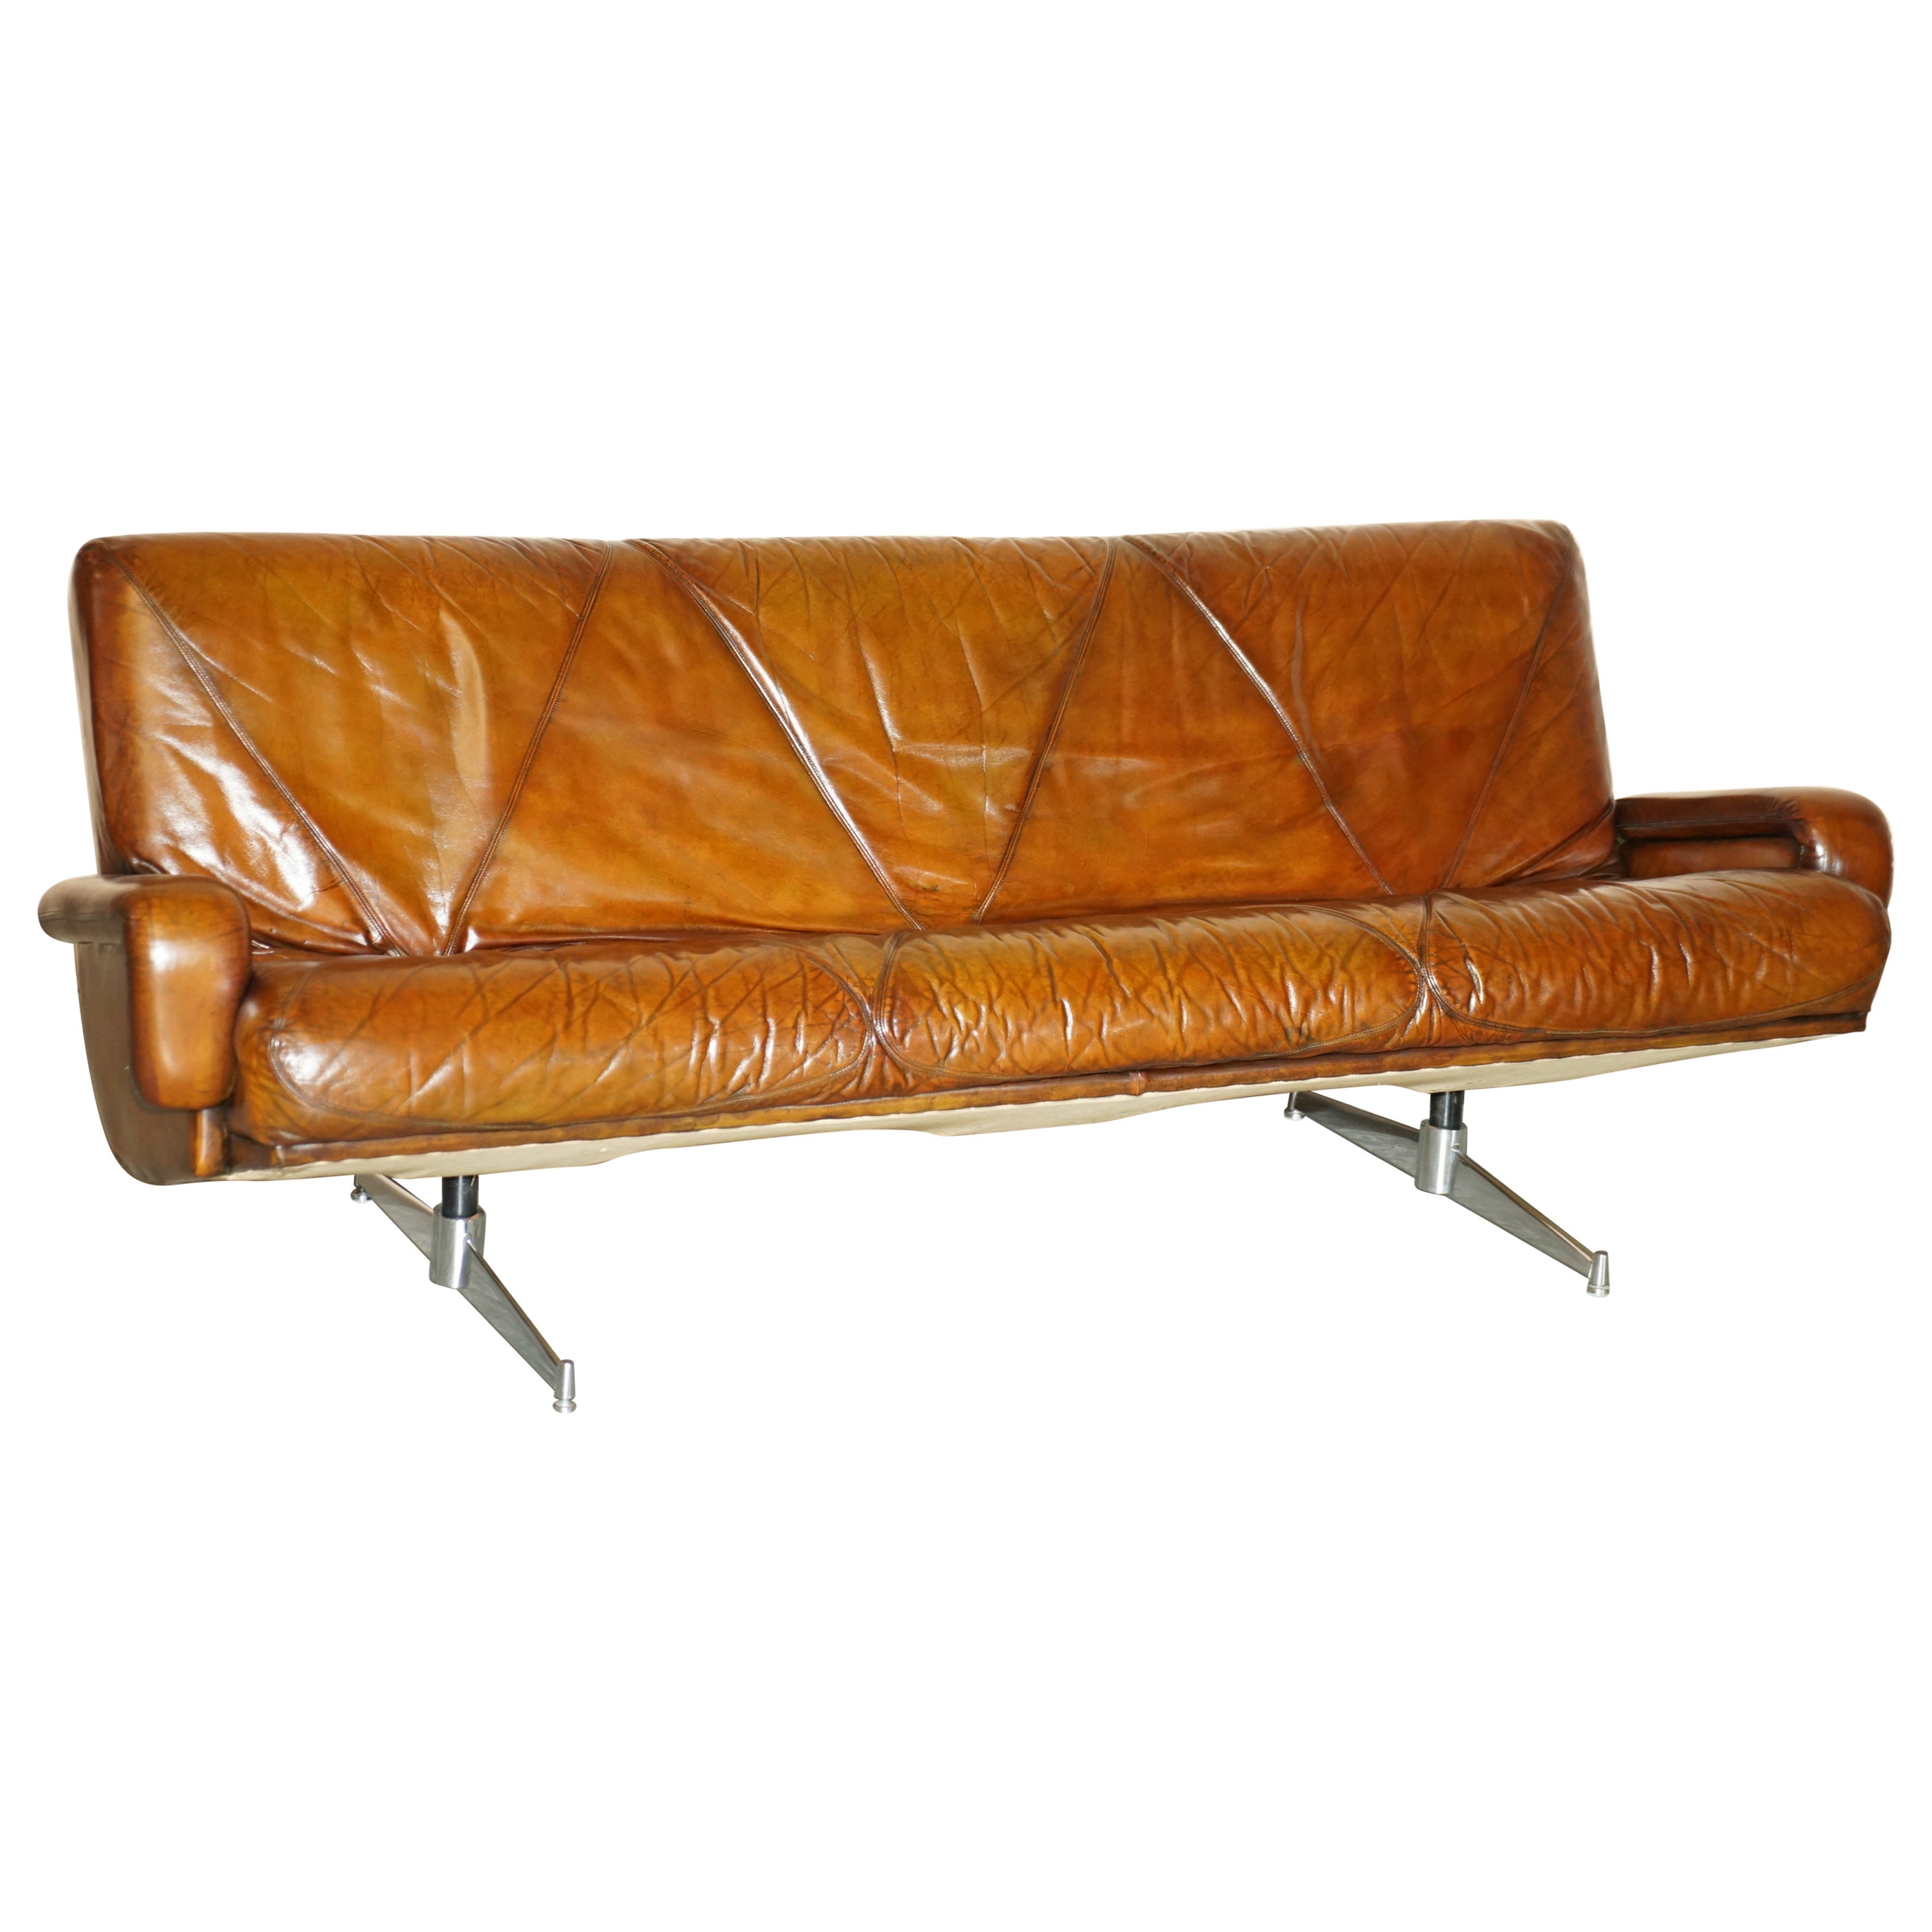 Canapé élégant en cuir marron teint à la main, entièrement restauré, de style moderne du milieu du siècle dernier